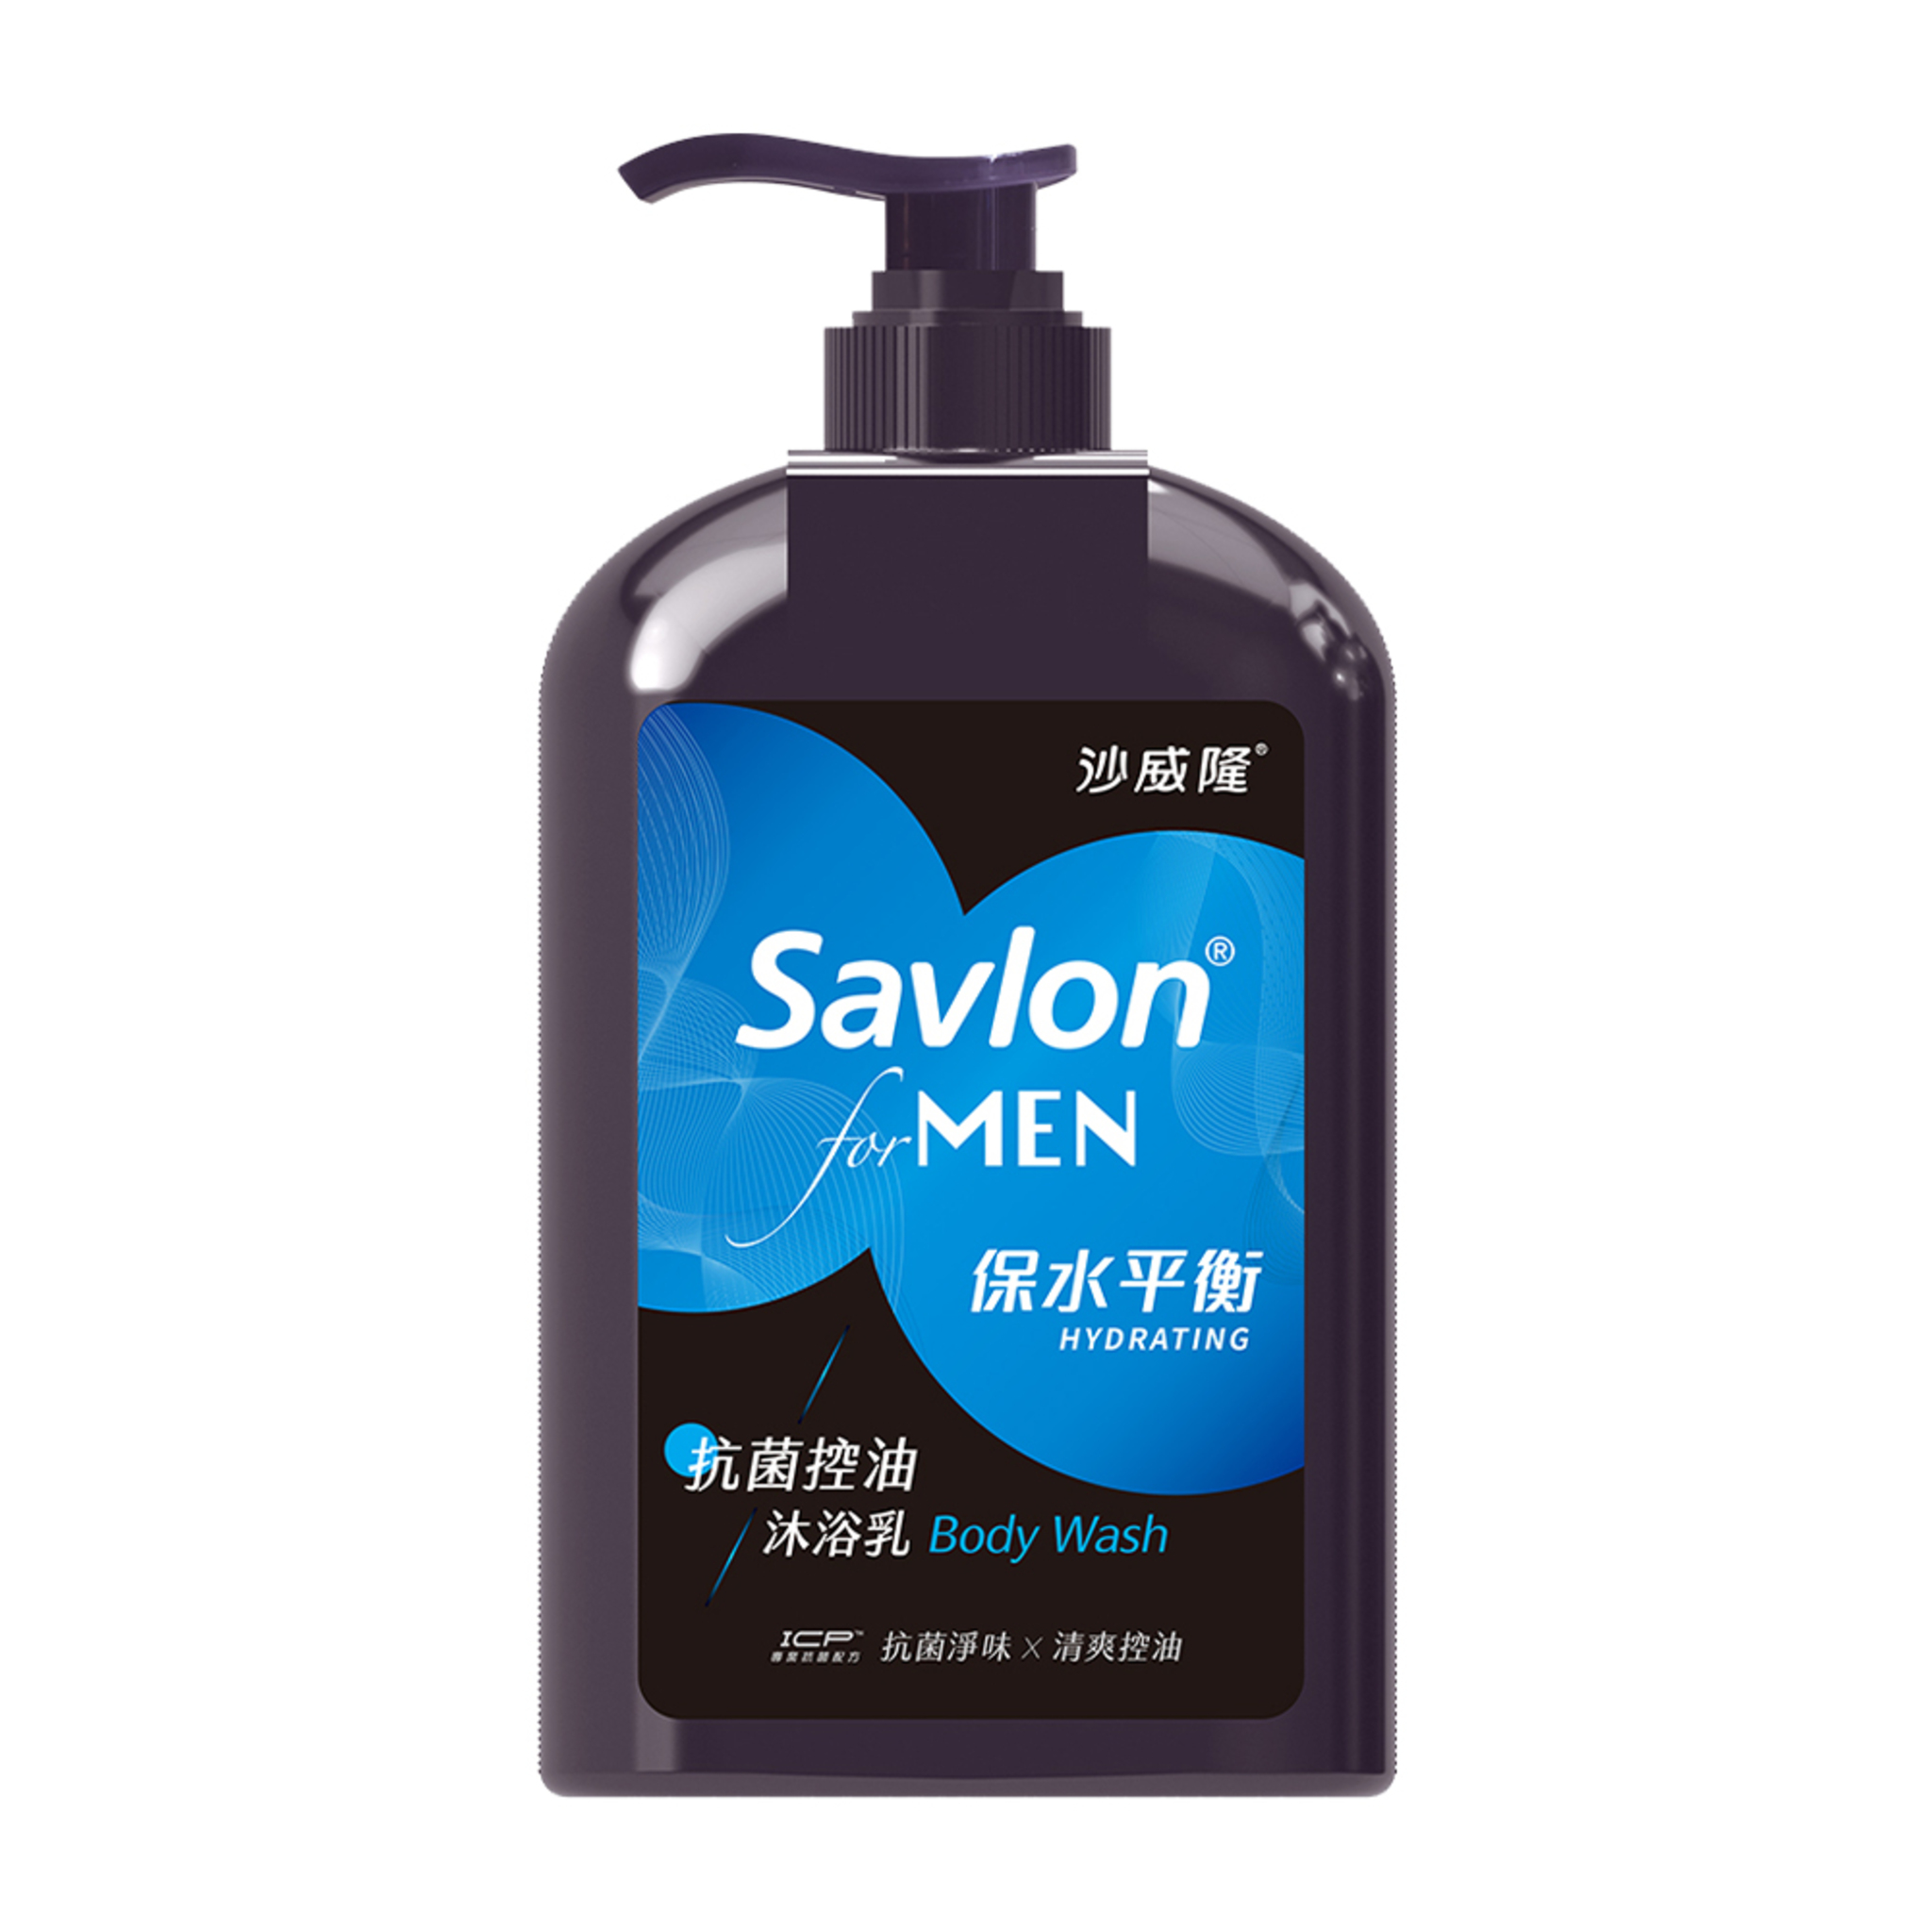 【Savlon沙威隆】男性抗菌沐浴乳670ml -保水平衡